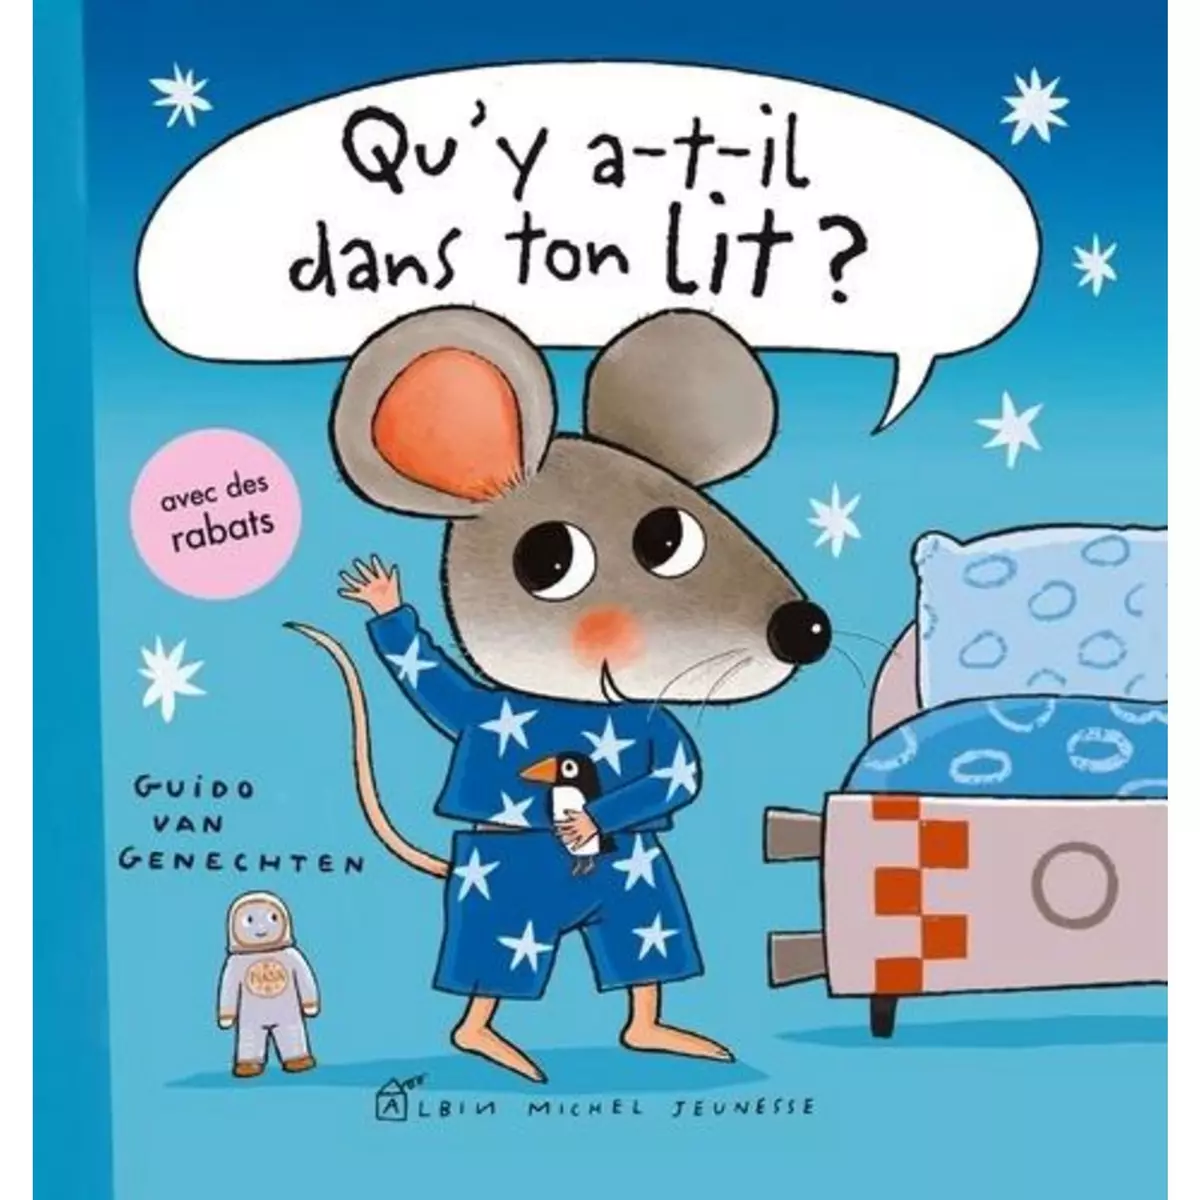  QU'Y A-T-IL DANS TON LIT ?, Van Genechten Guido